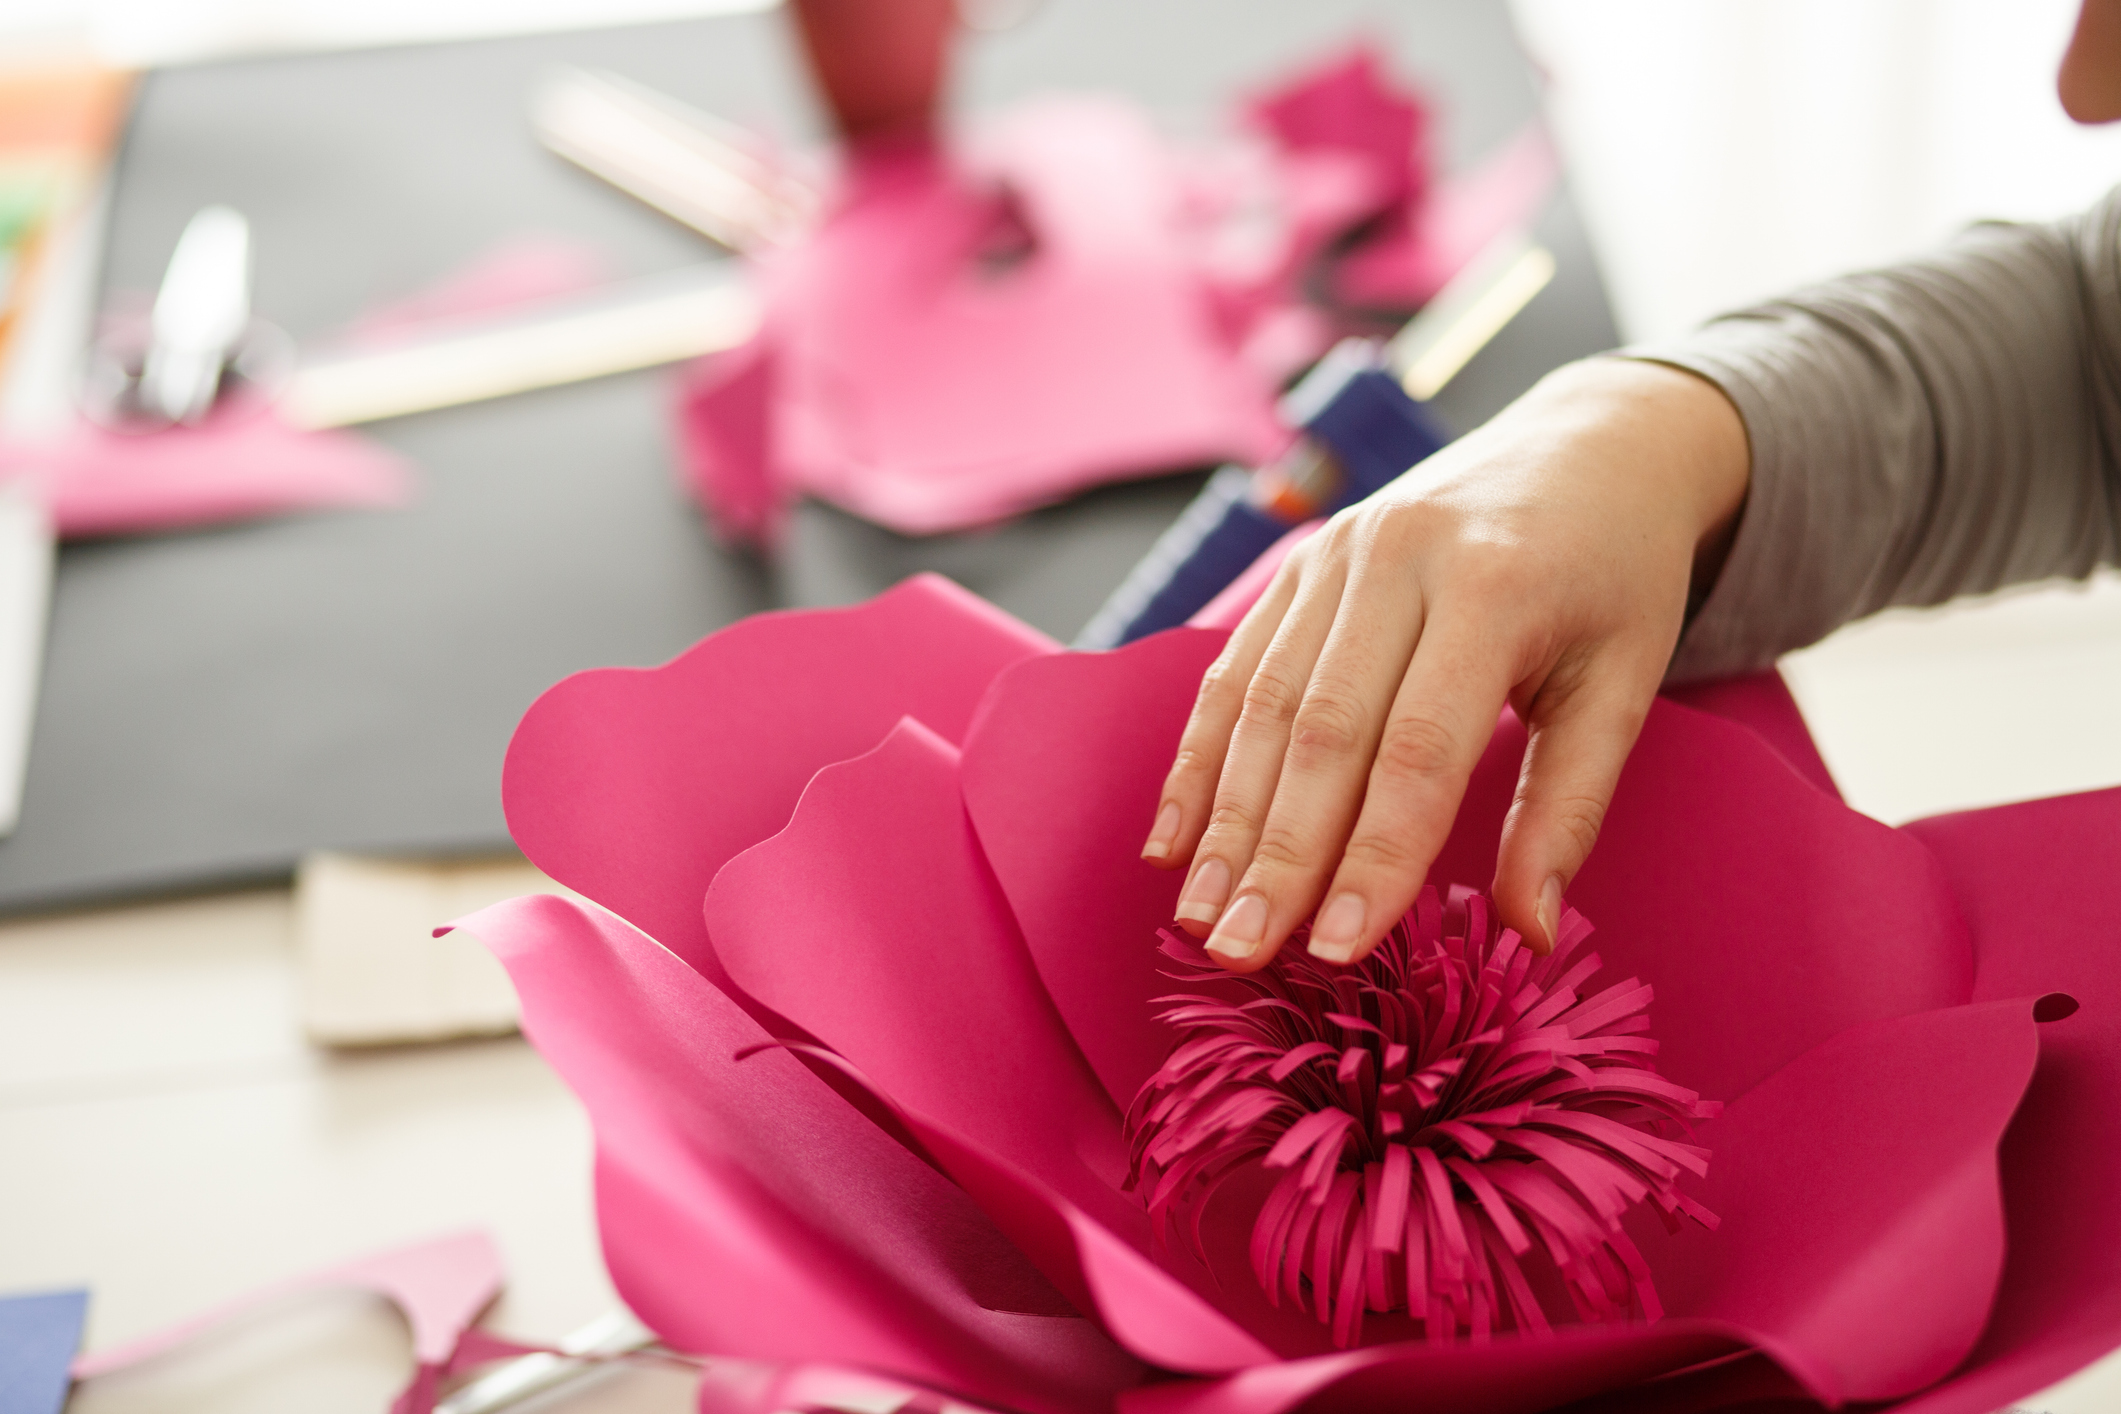 La fabrication de fleurs en papier géantes se distingue par son originalité et son esthétique étonnante (image d'illustration). Copyright (c) Fotostorm/Istock.